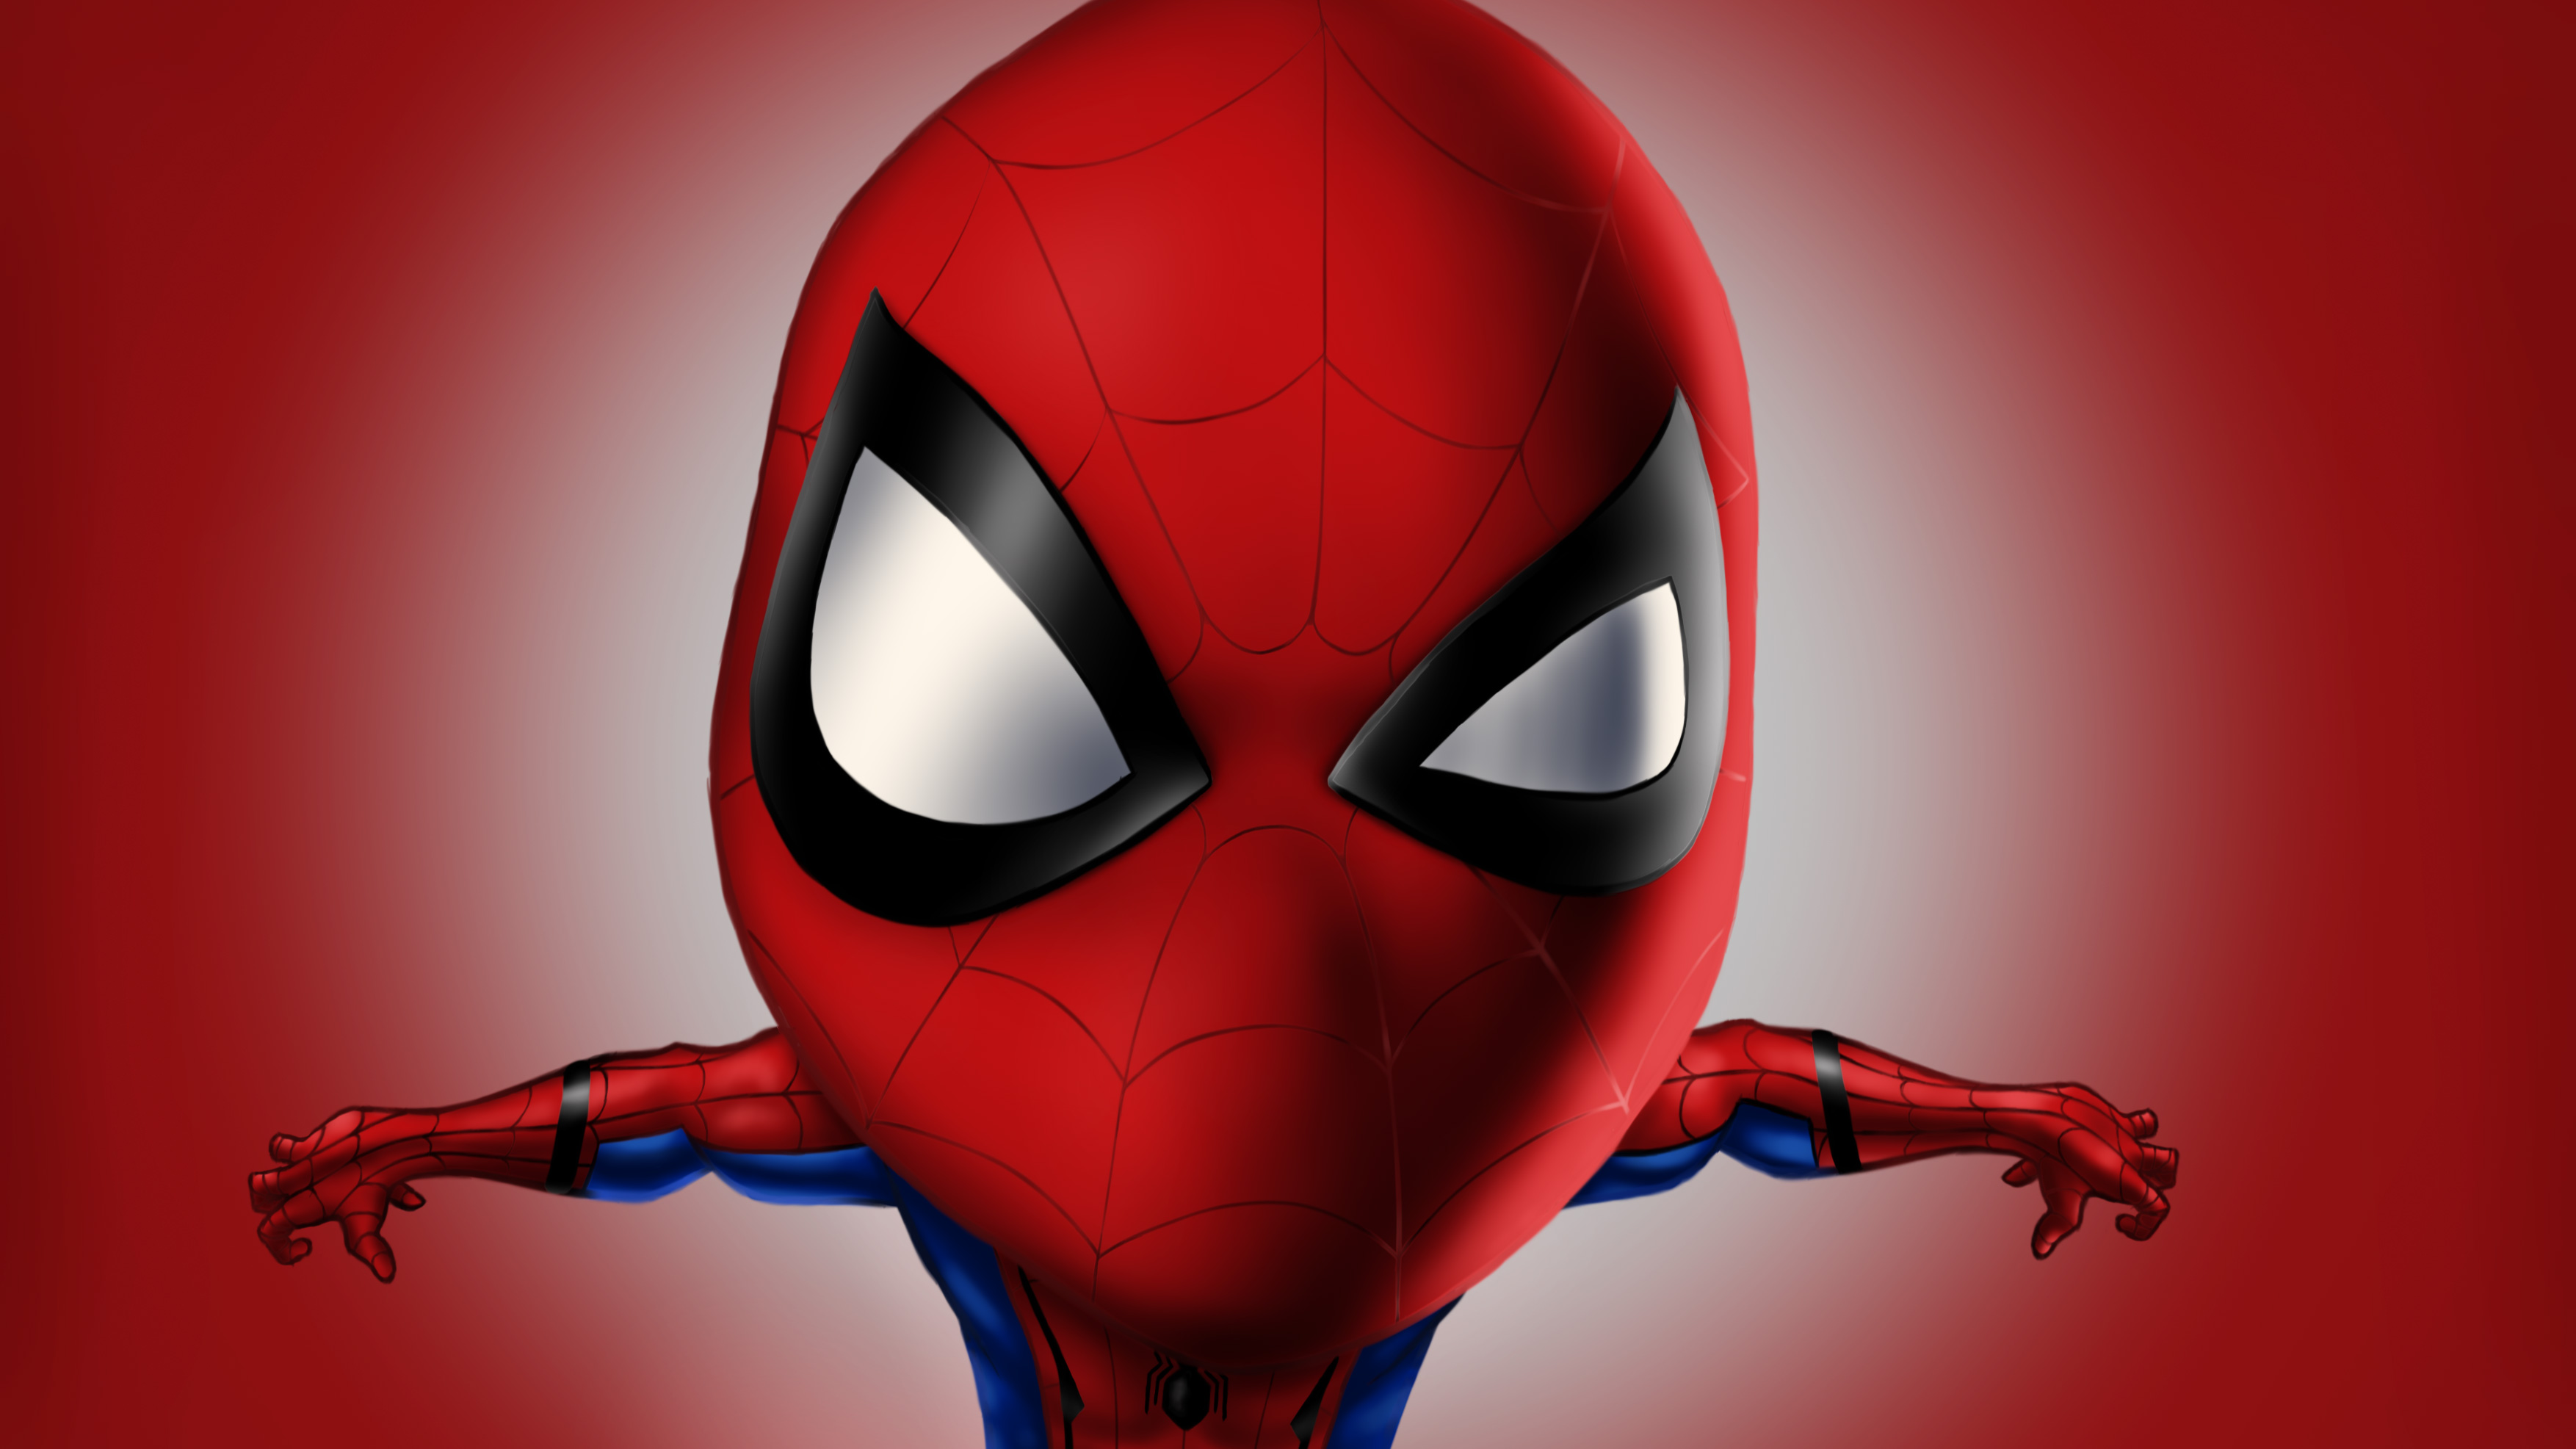 Spiderman 4k Digital Artwork, HD Superheroes, 4k Wallpapers, Images